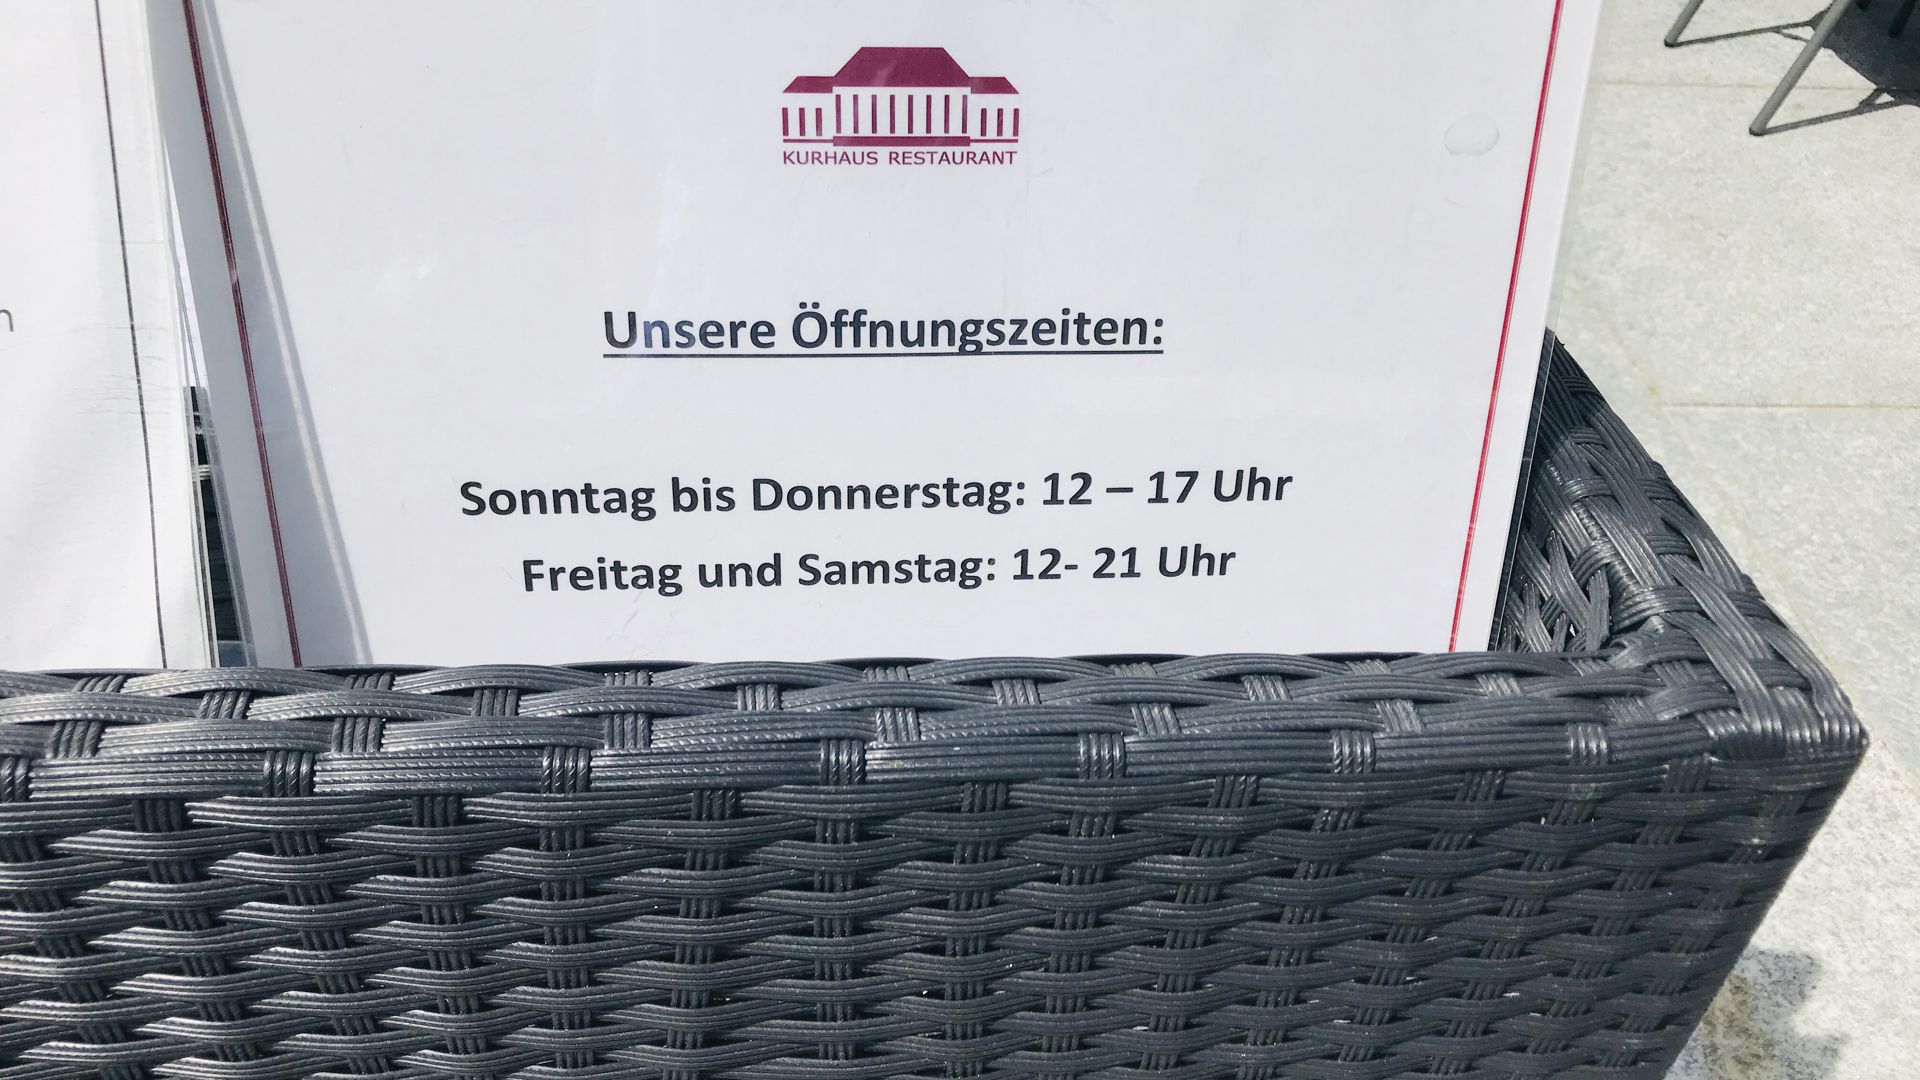 Ein Schild zeigt die Öffnungszeiten des Restaurants im Kurhaus Baden-Baden an.